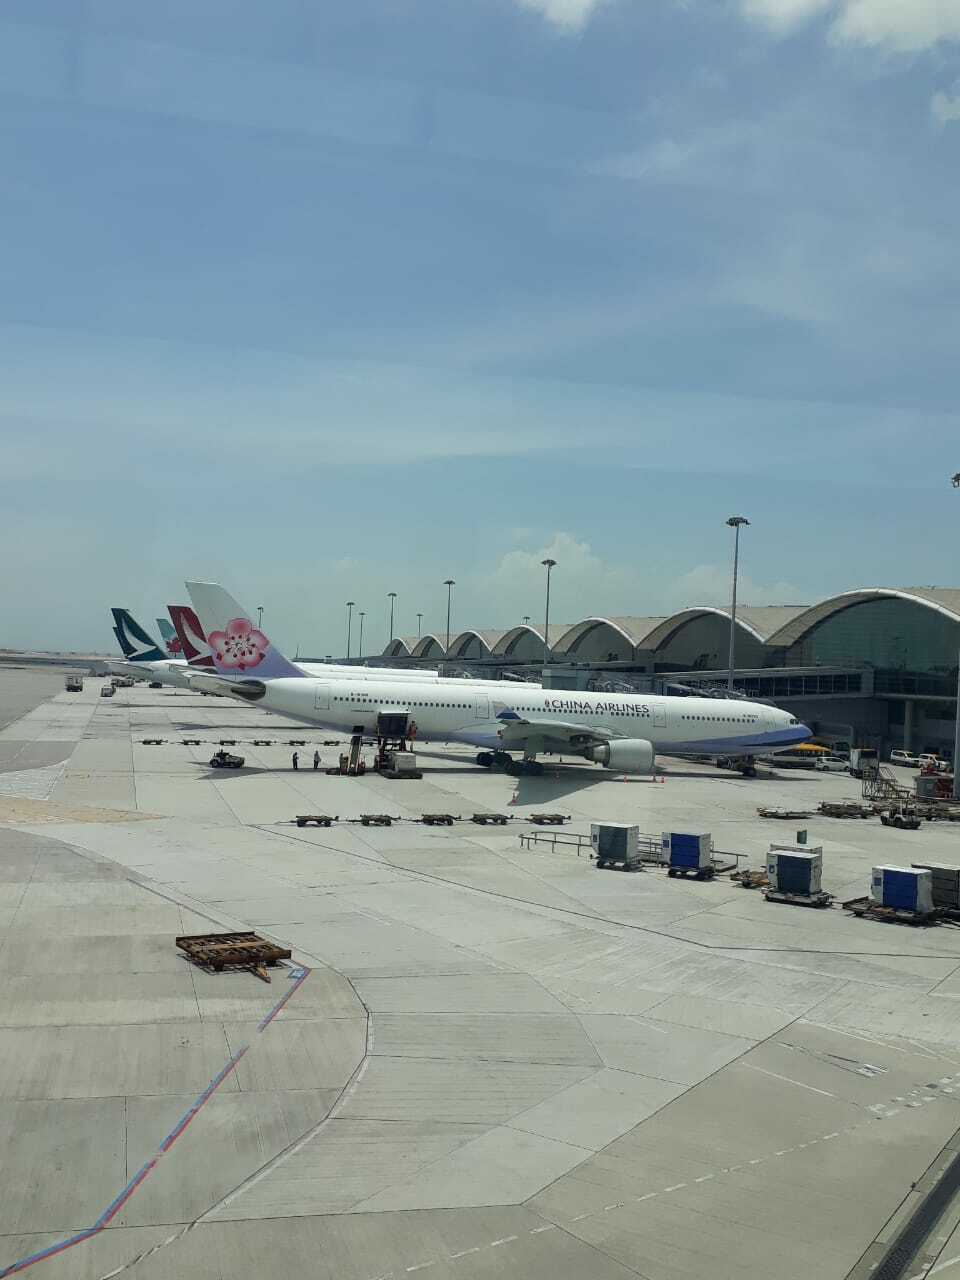 Hong Kong International Airport in July. (JG Photo/Telly Nathalia)